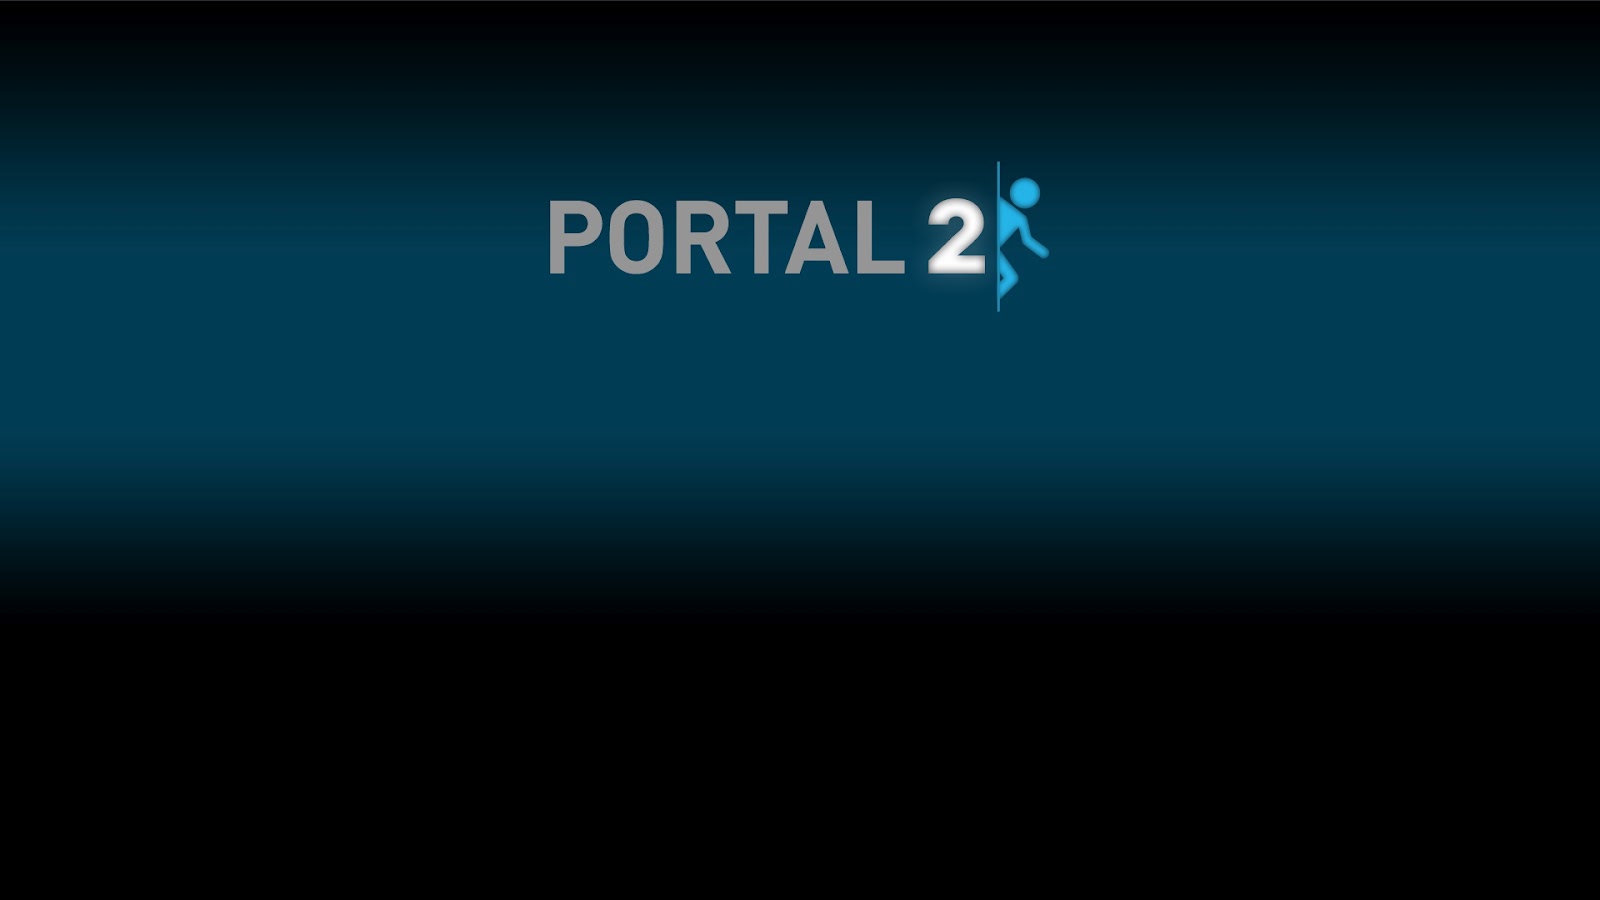 portal wide Portal in Full HD Wallpapers 1080p